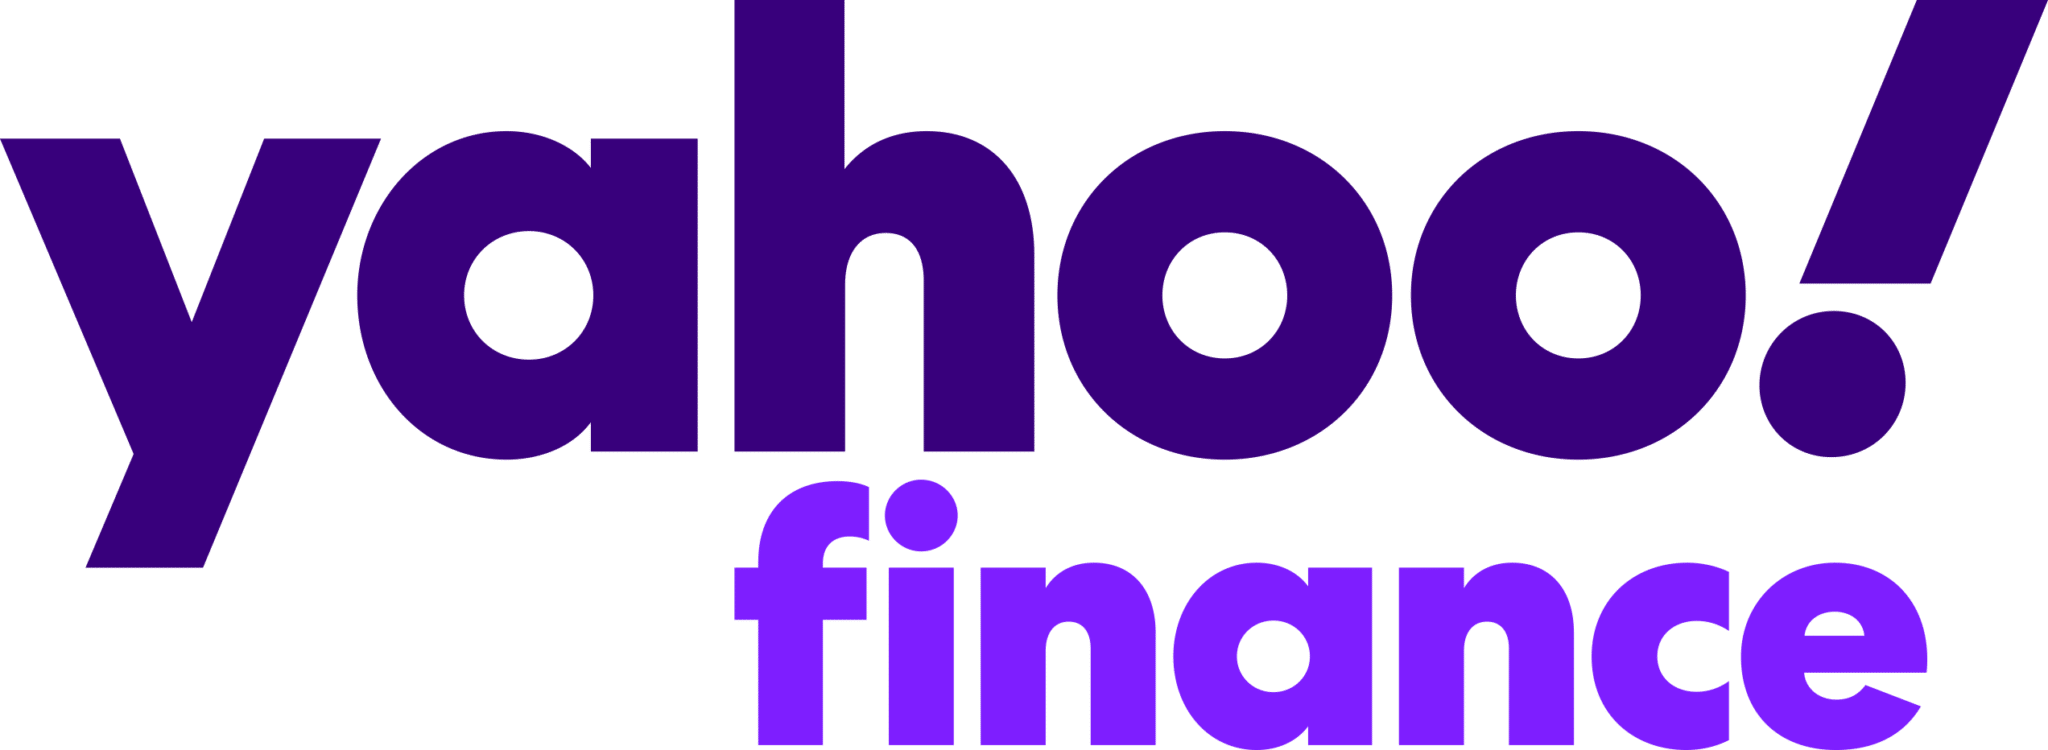 Yahoo finance logo